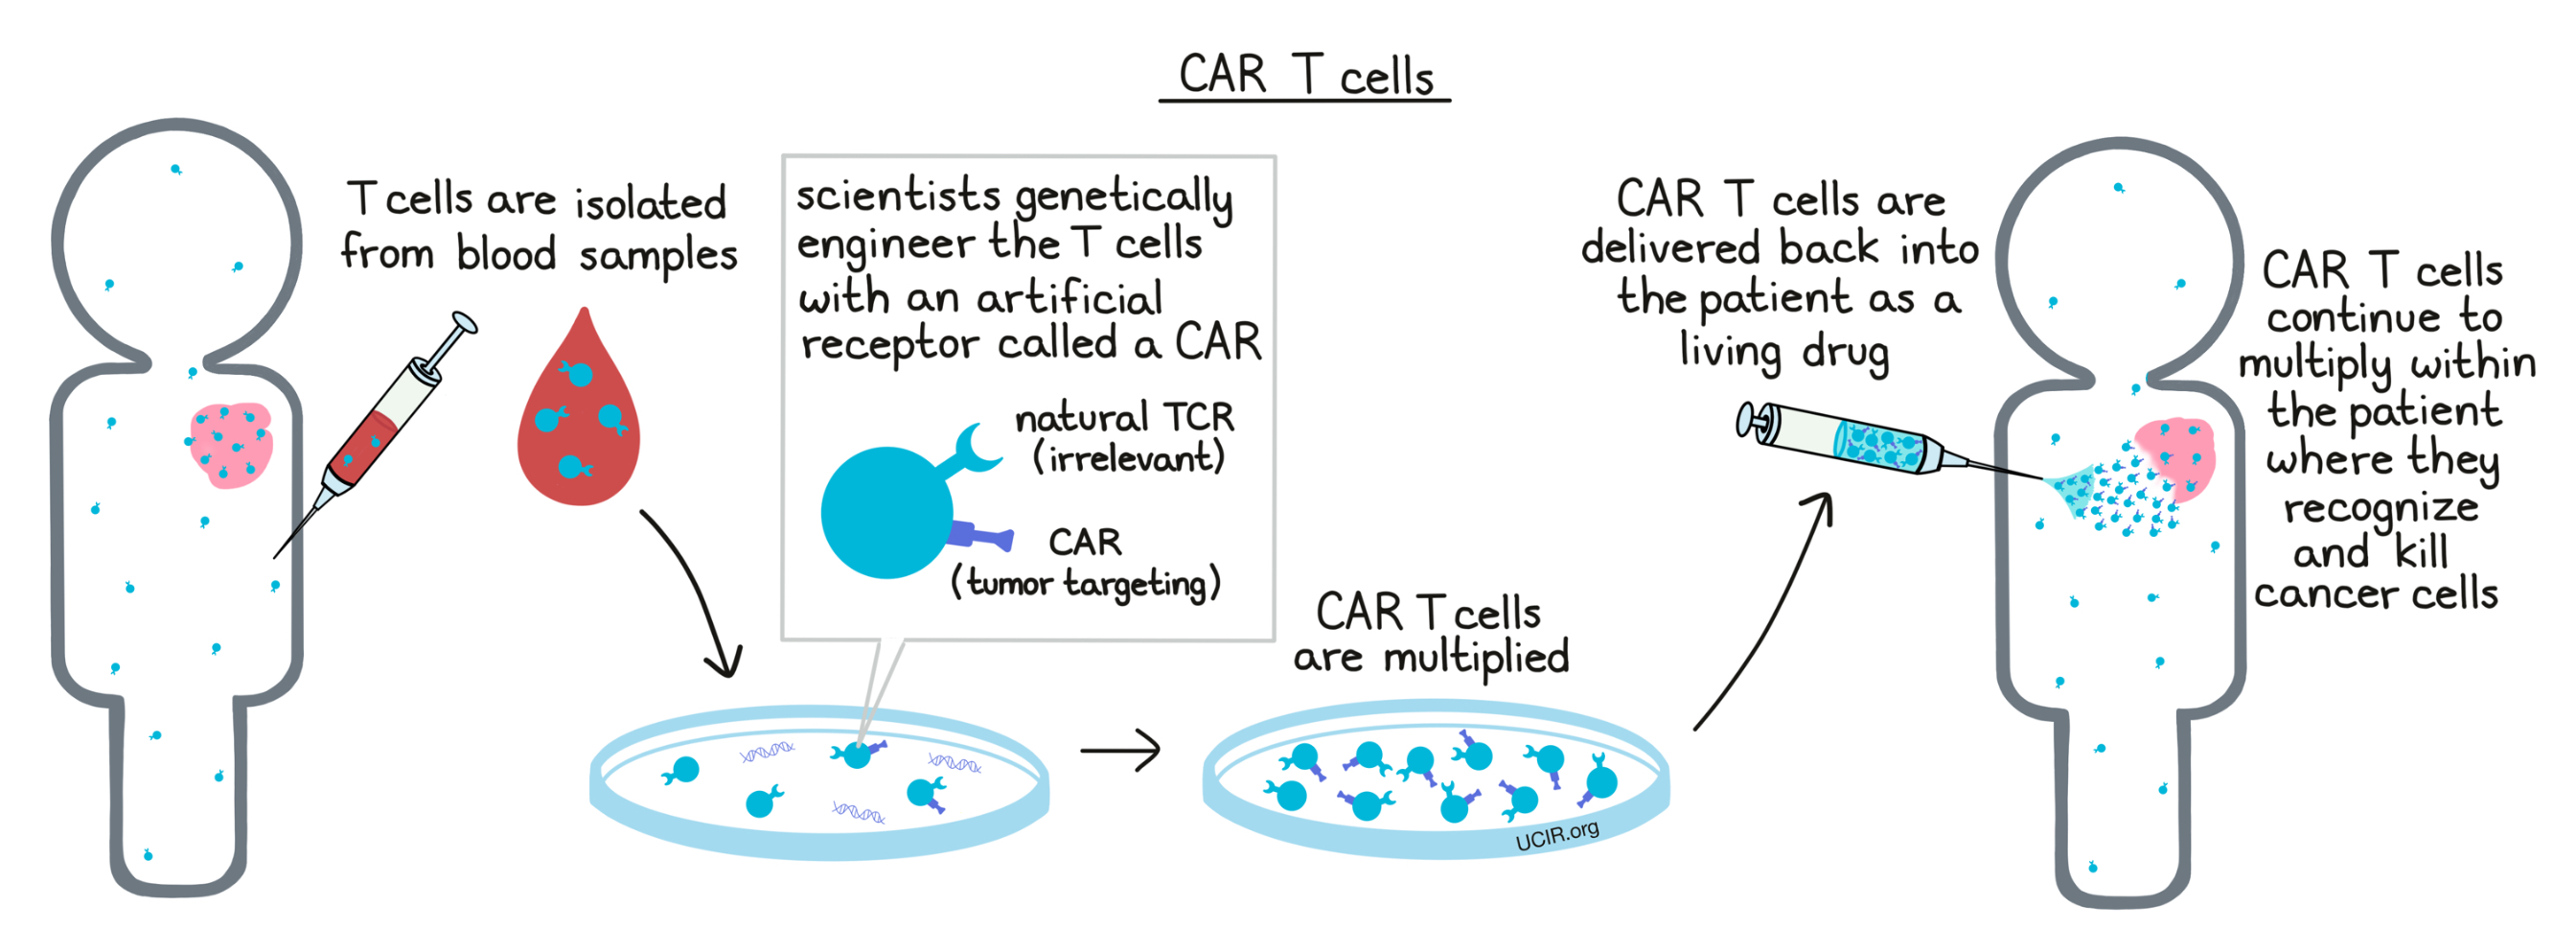 CAR T cells